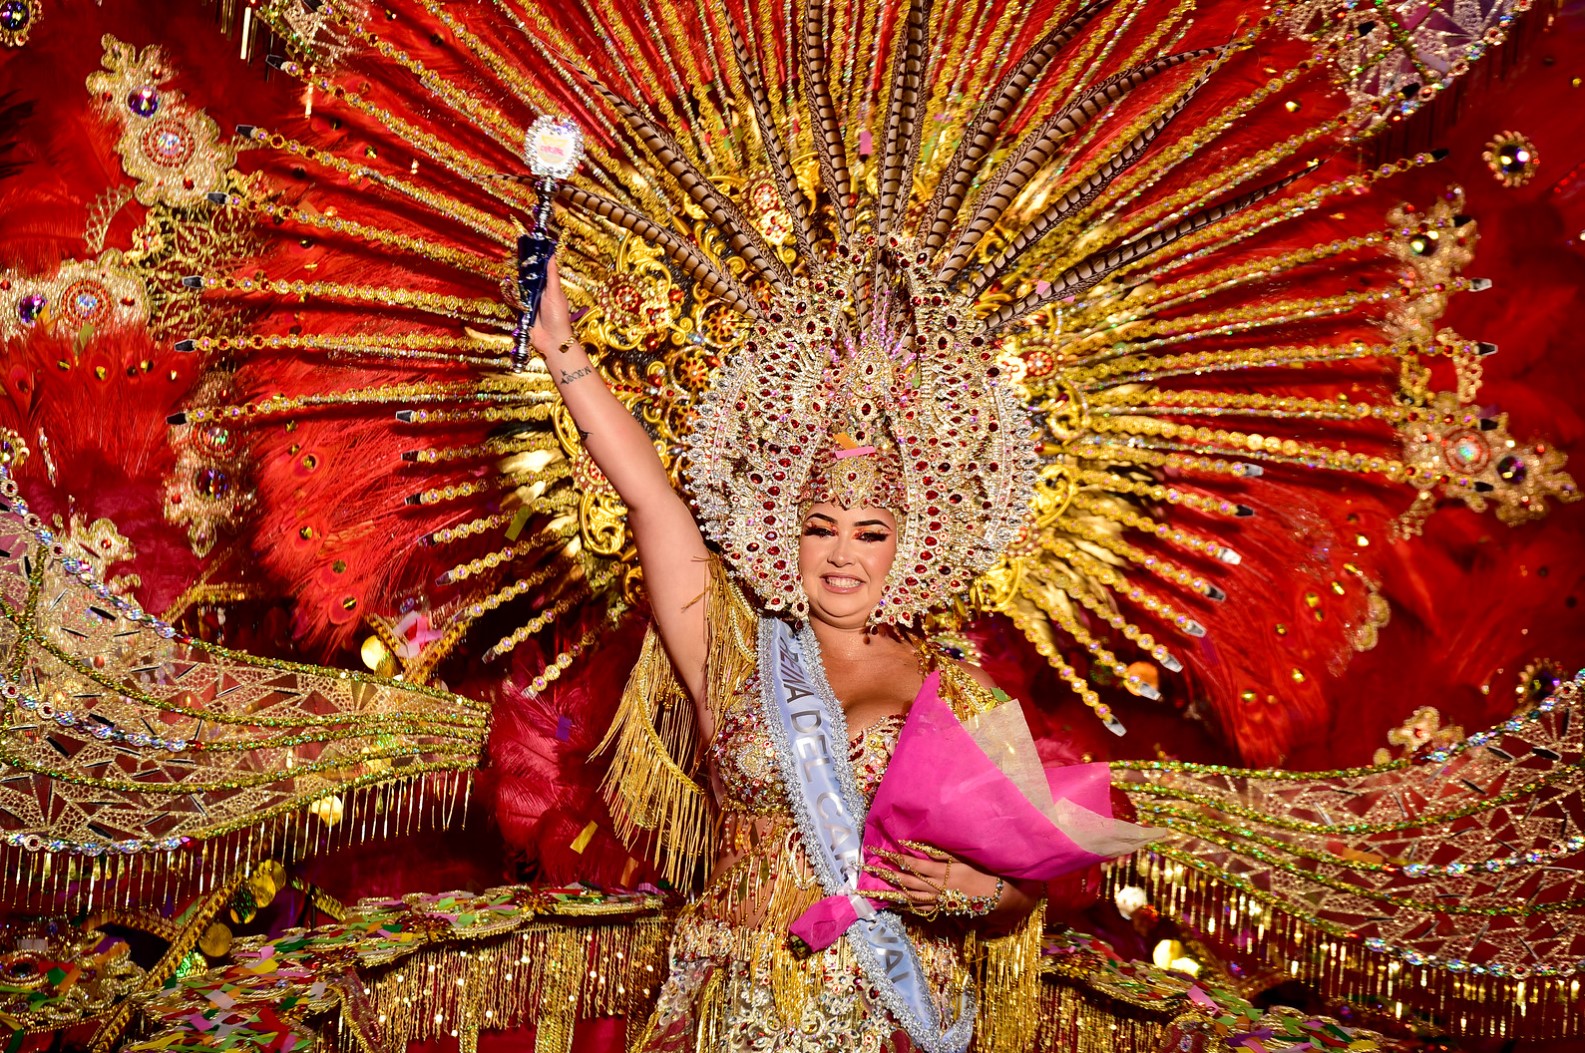 Kostüme wie in Rio: Jedes Jahr wird bei einem spektakulären Festakt die Karnevalskönigin gekürt. Foto: Ayuntamiento de Puerto de la Cruz